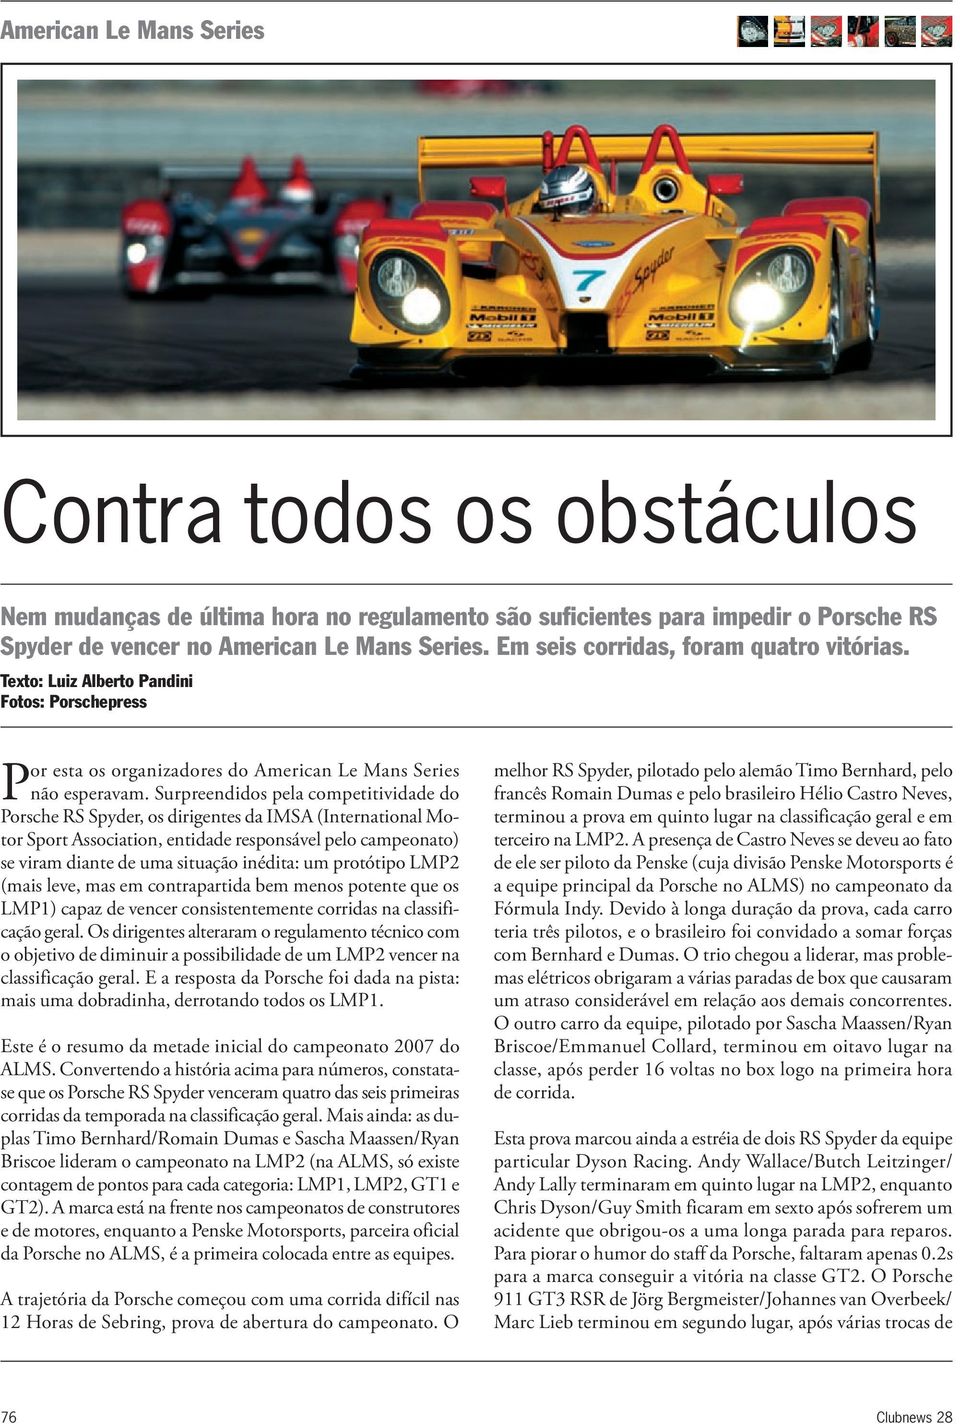 Surpreendidos pela competitividade do Porsche RS Spyder, os dirigentes da IMSA (International Motor Sport Association, entidade responsável pelo campeonato) se viram diante de uma situação inédita: